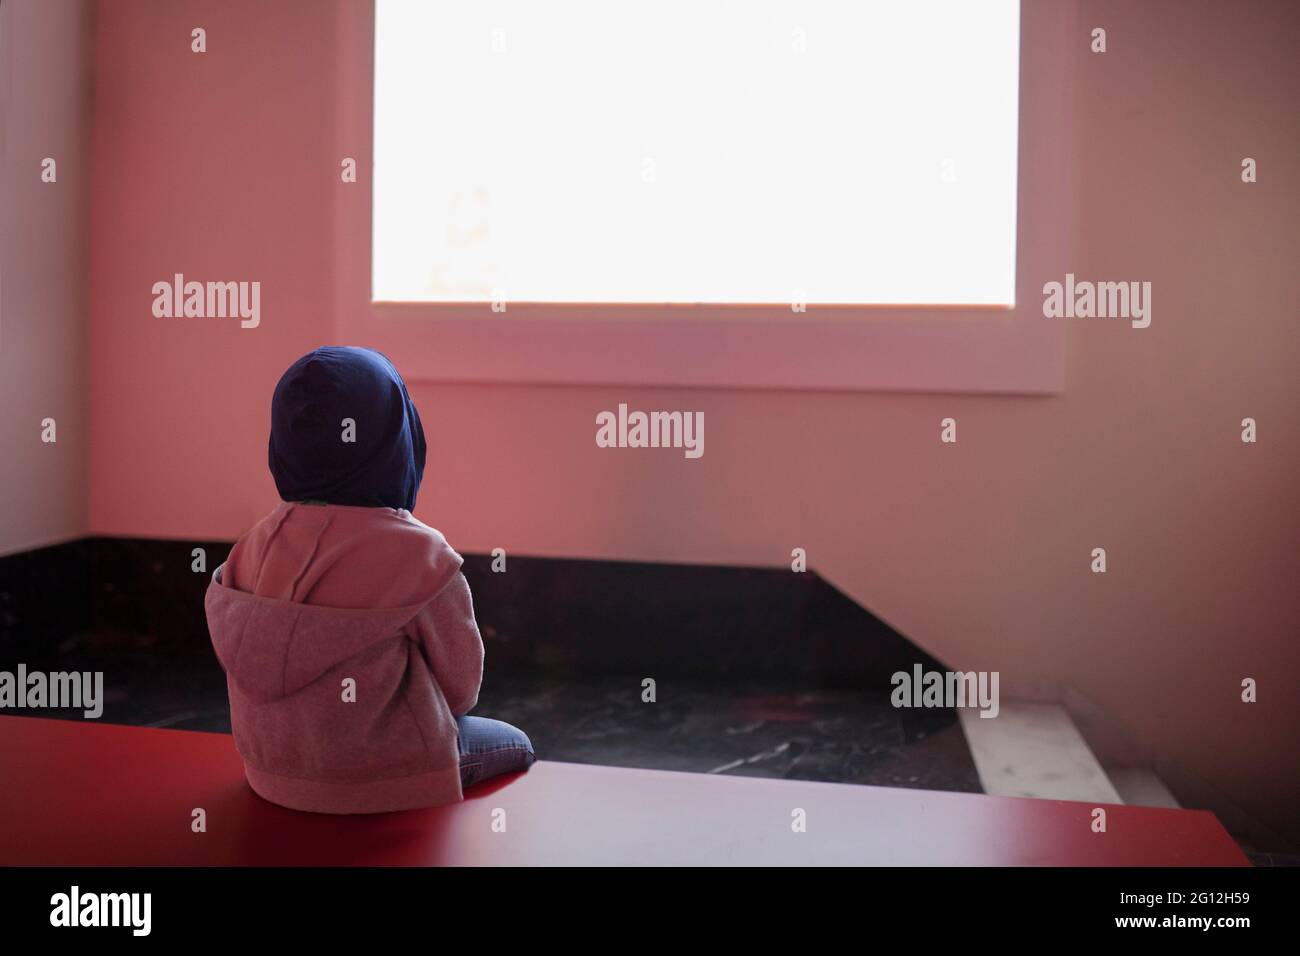 Un enfant regarde un écran vide. Concept d'isolation du divertissement d'écran. Banque D'Images